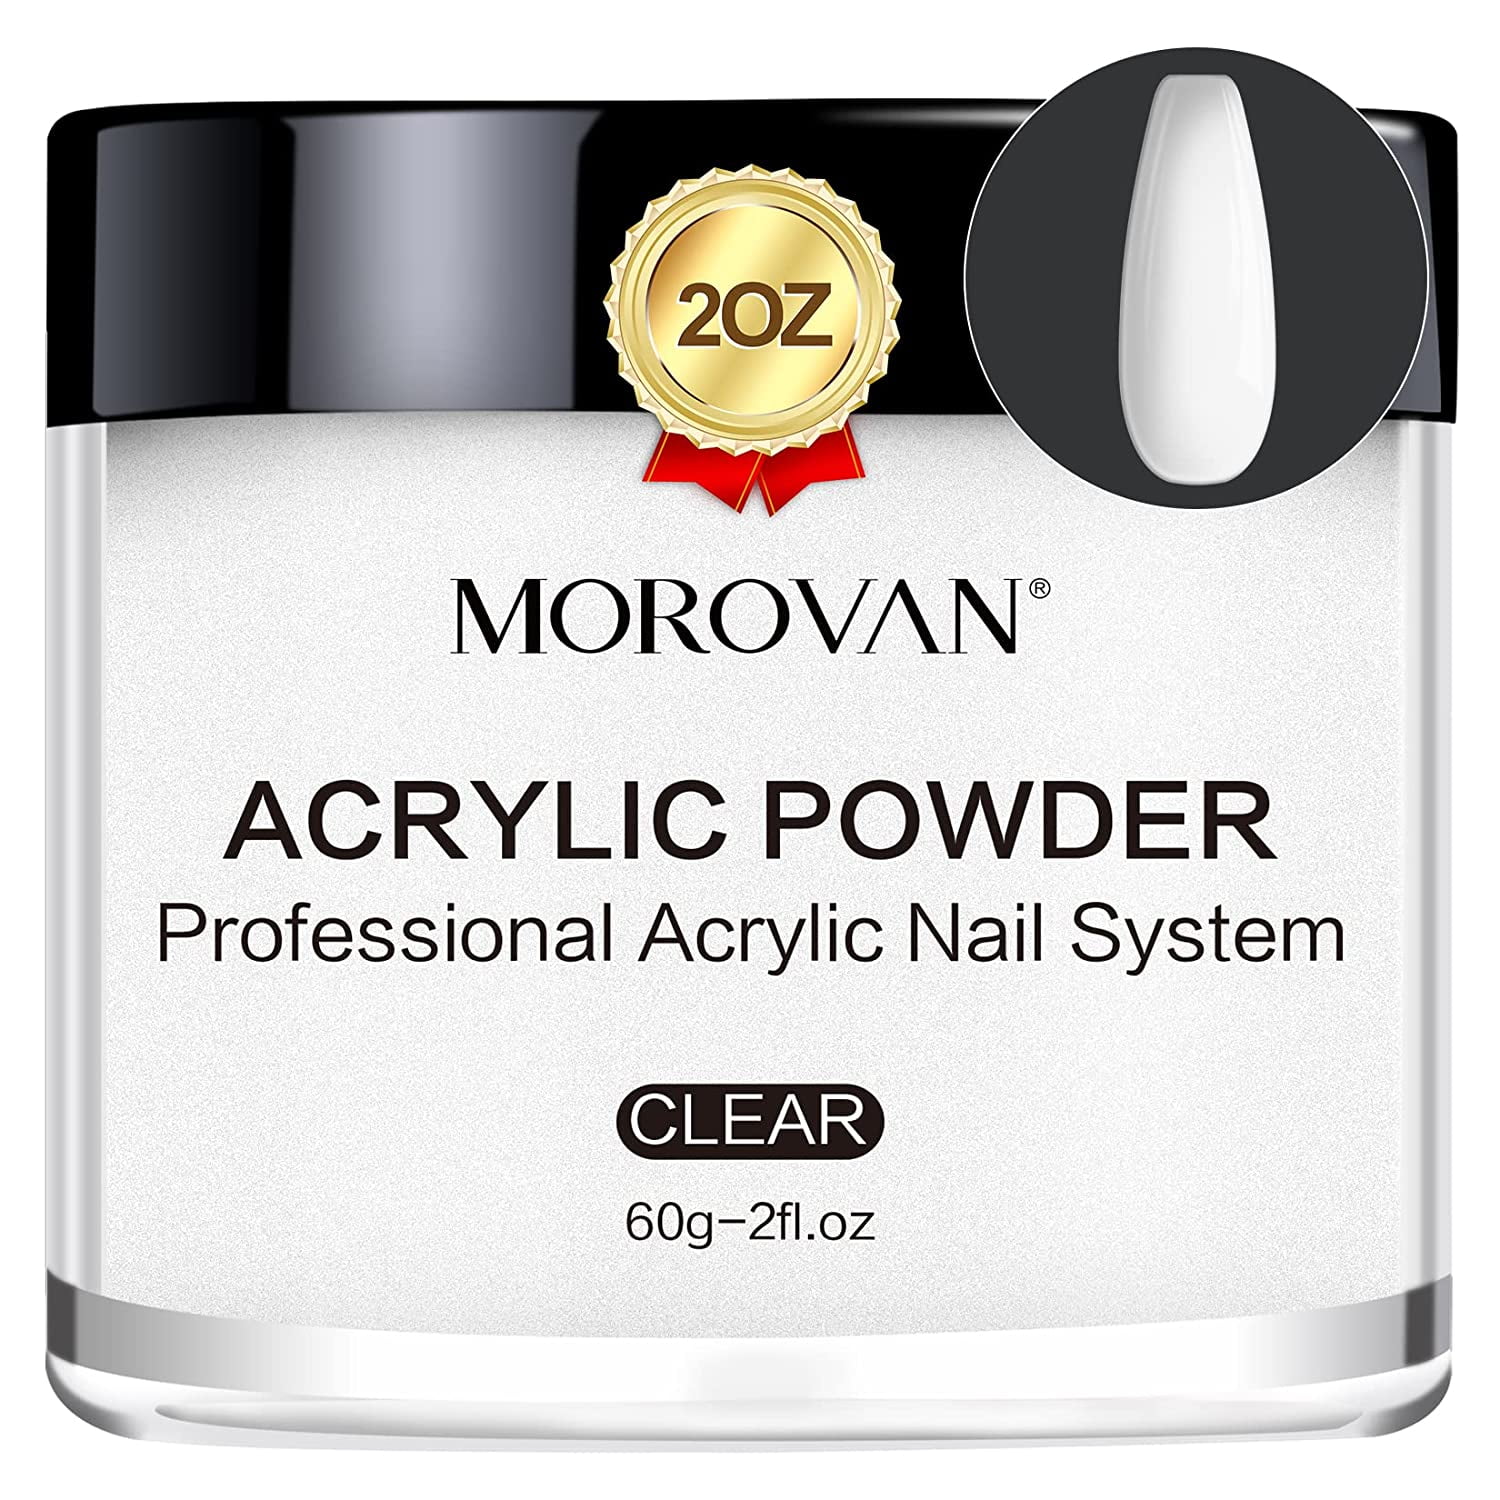 Morovan Black Acrylic Nail Powder 4oz Professional Acrylic Nail Powder Large Acrylic Nail Powder, Size: 120g / 4oz